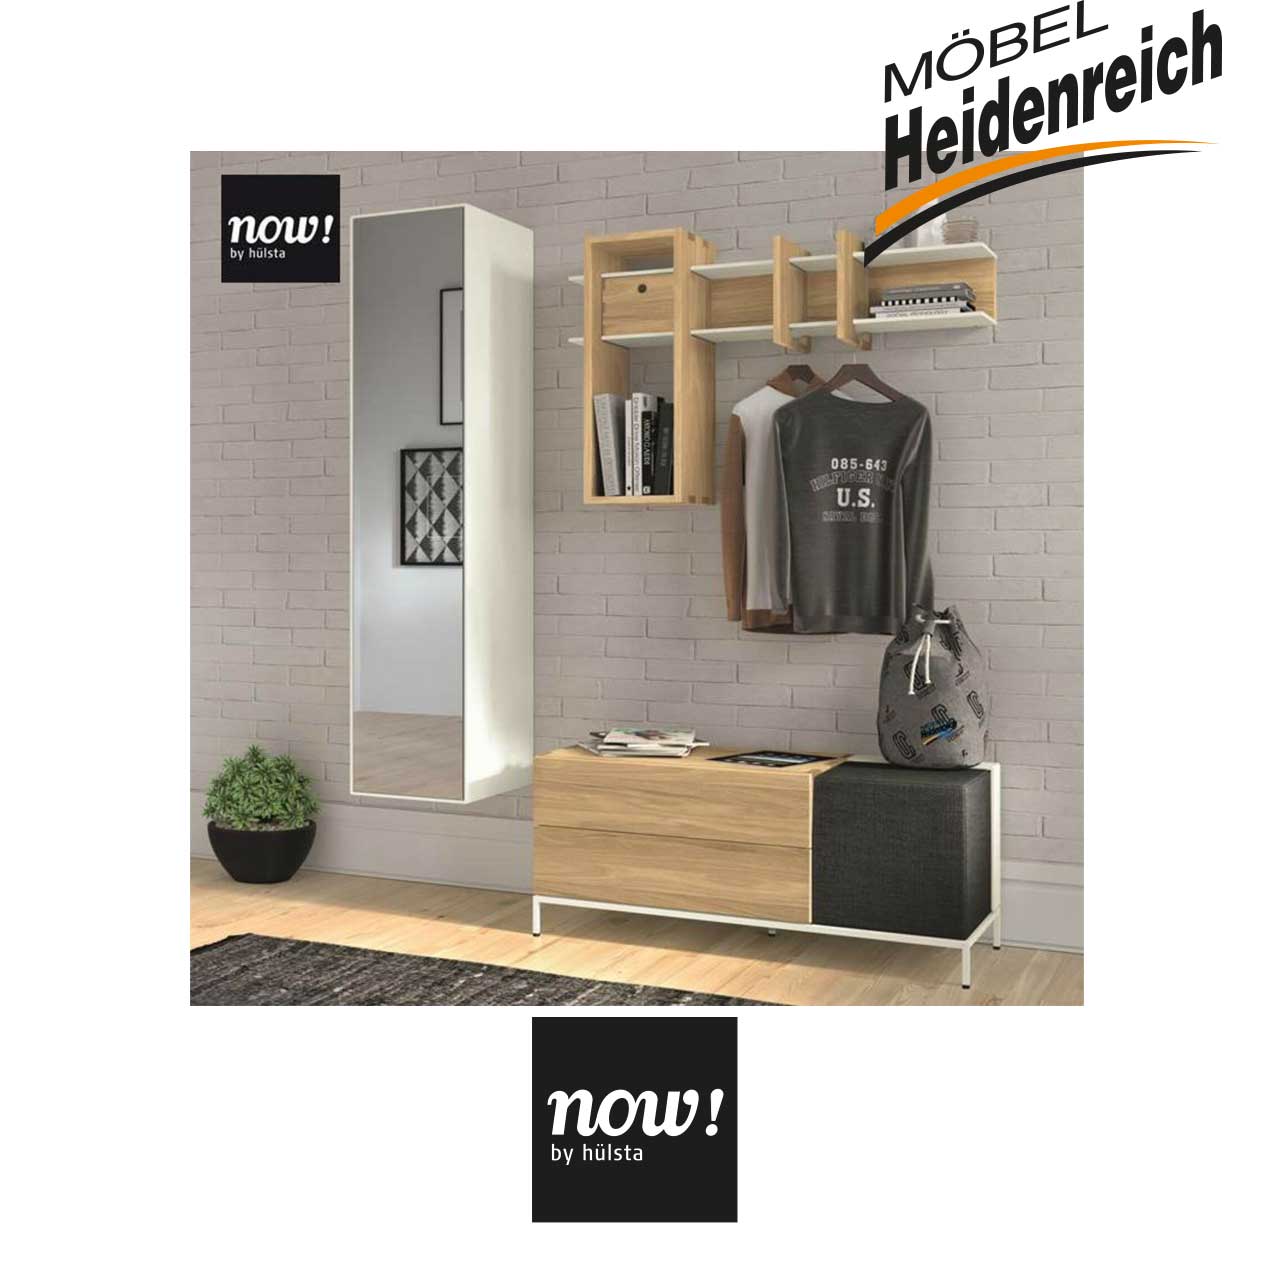 now! by hülsta now! spin Garderobe Möbel Heidenreich